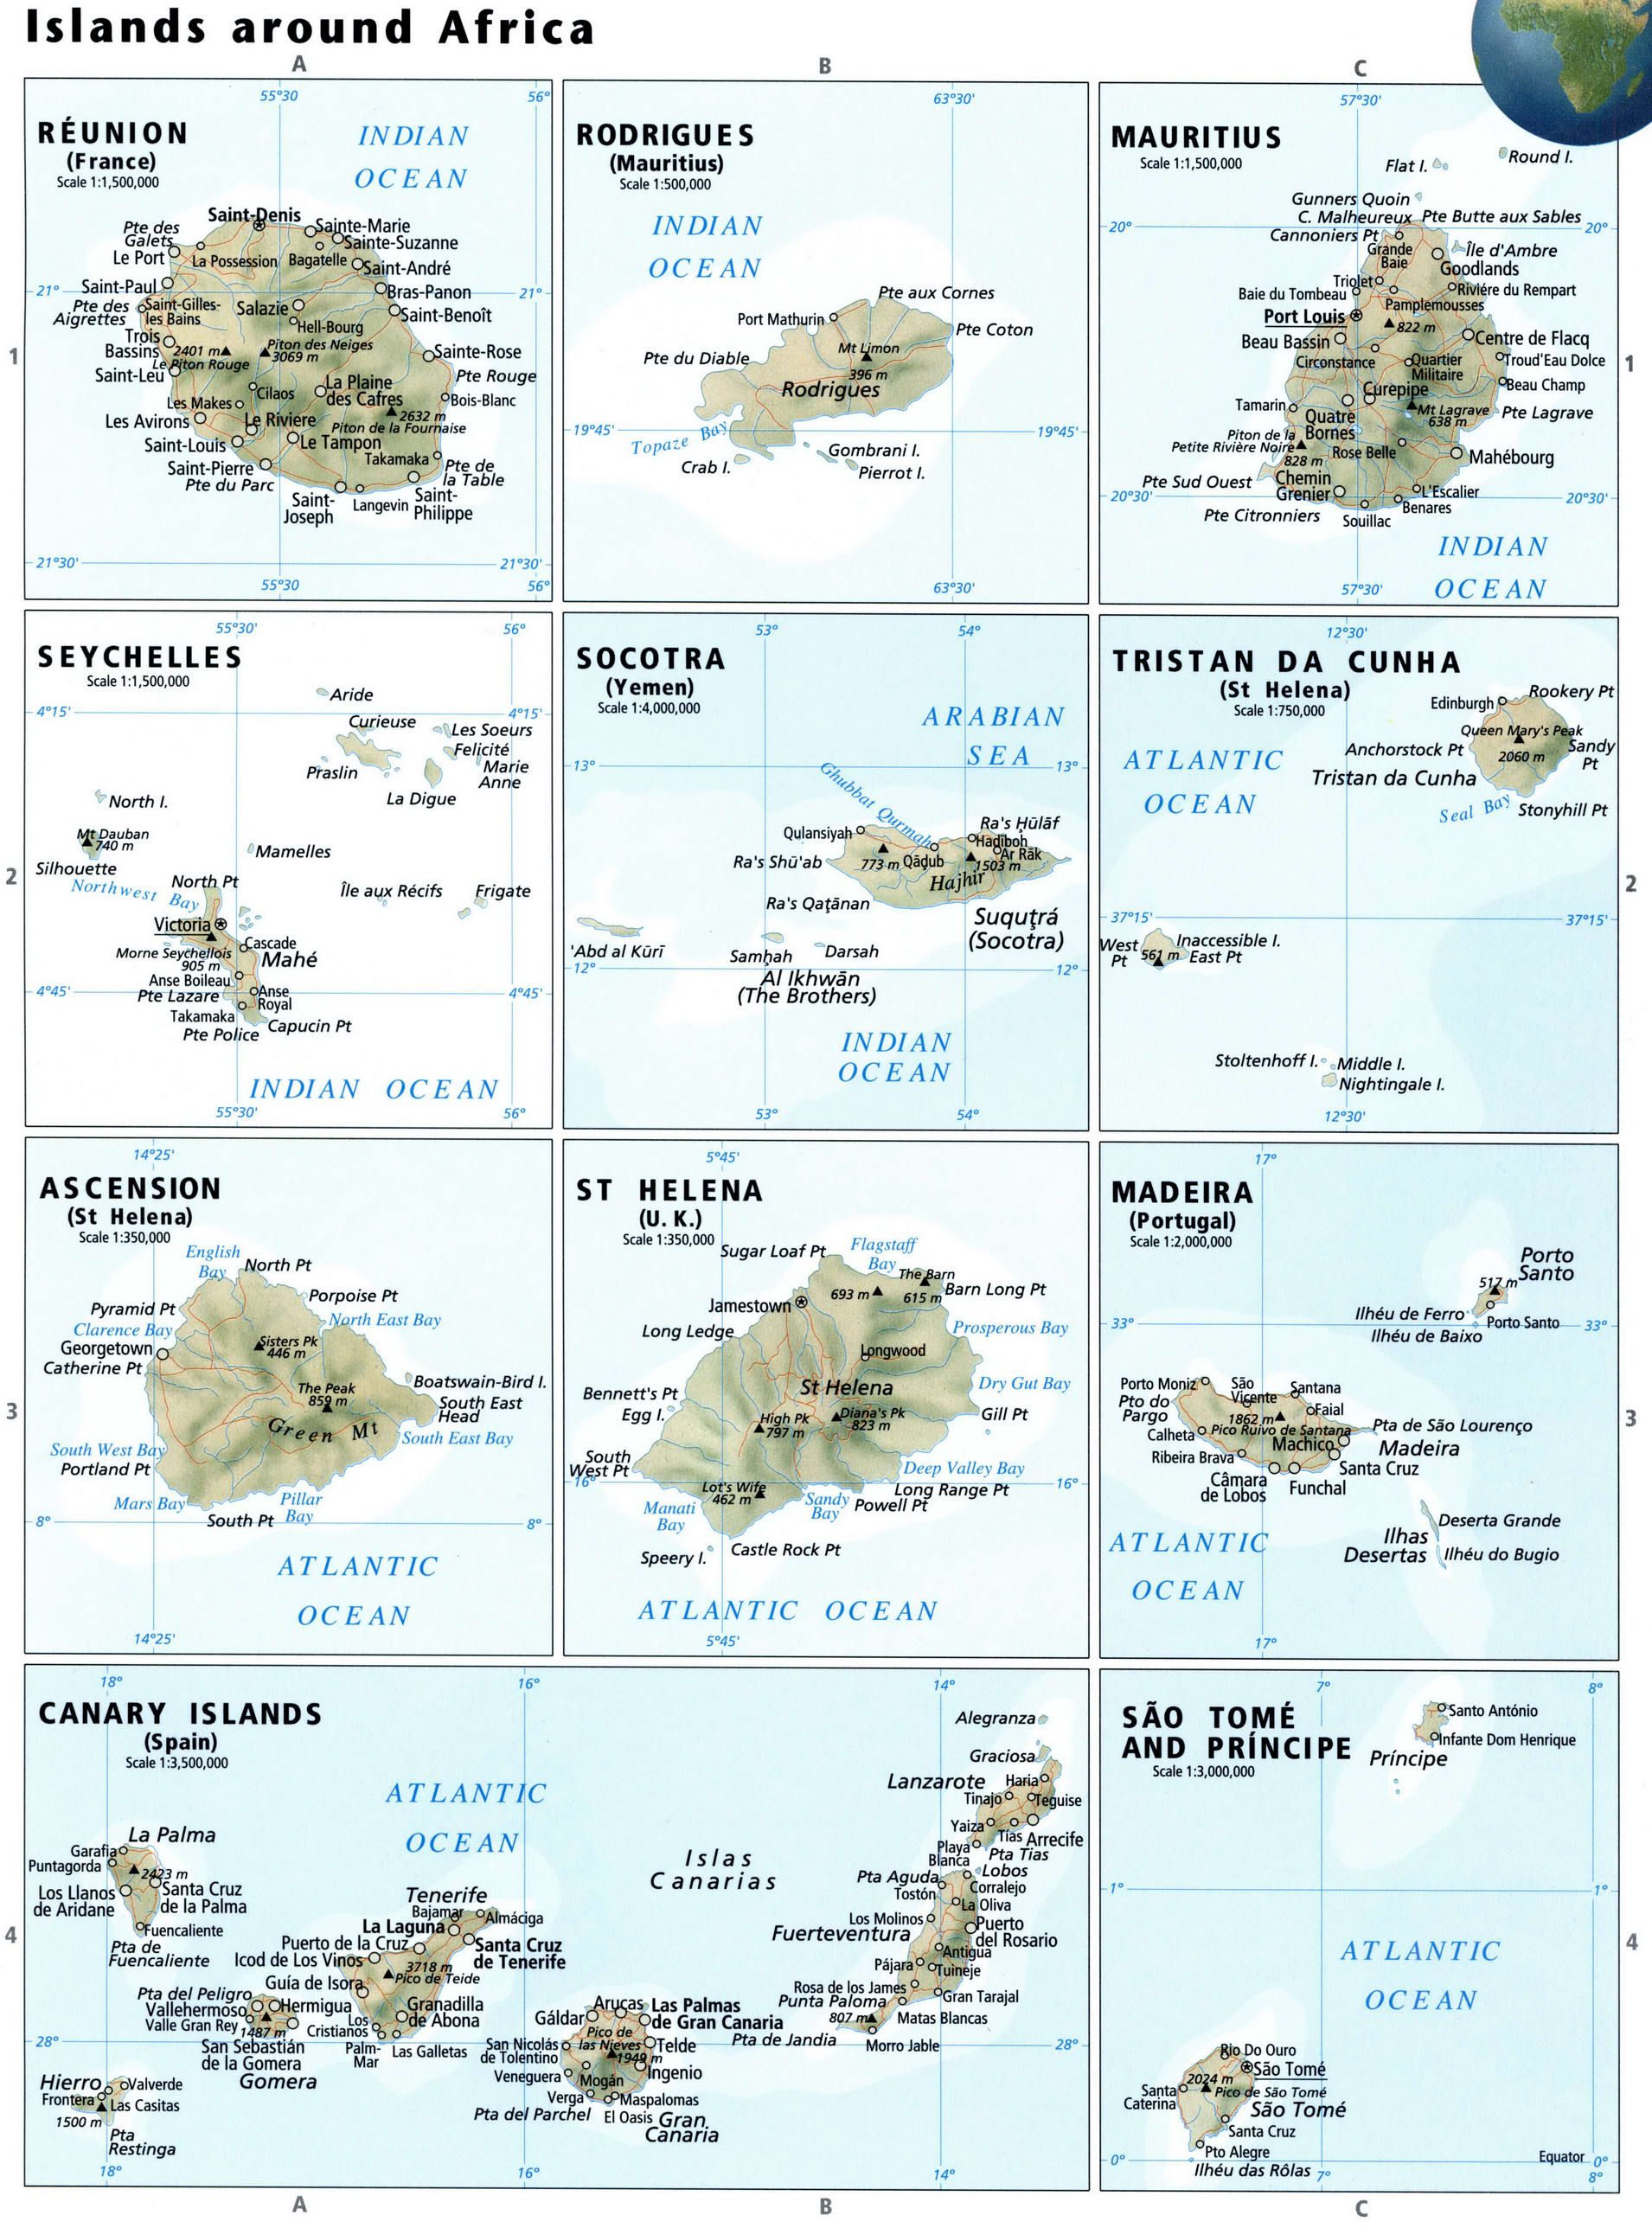 Islands around Africa map